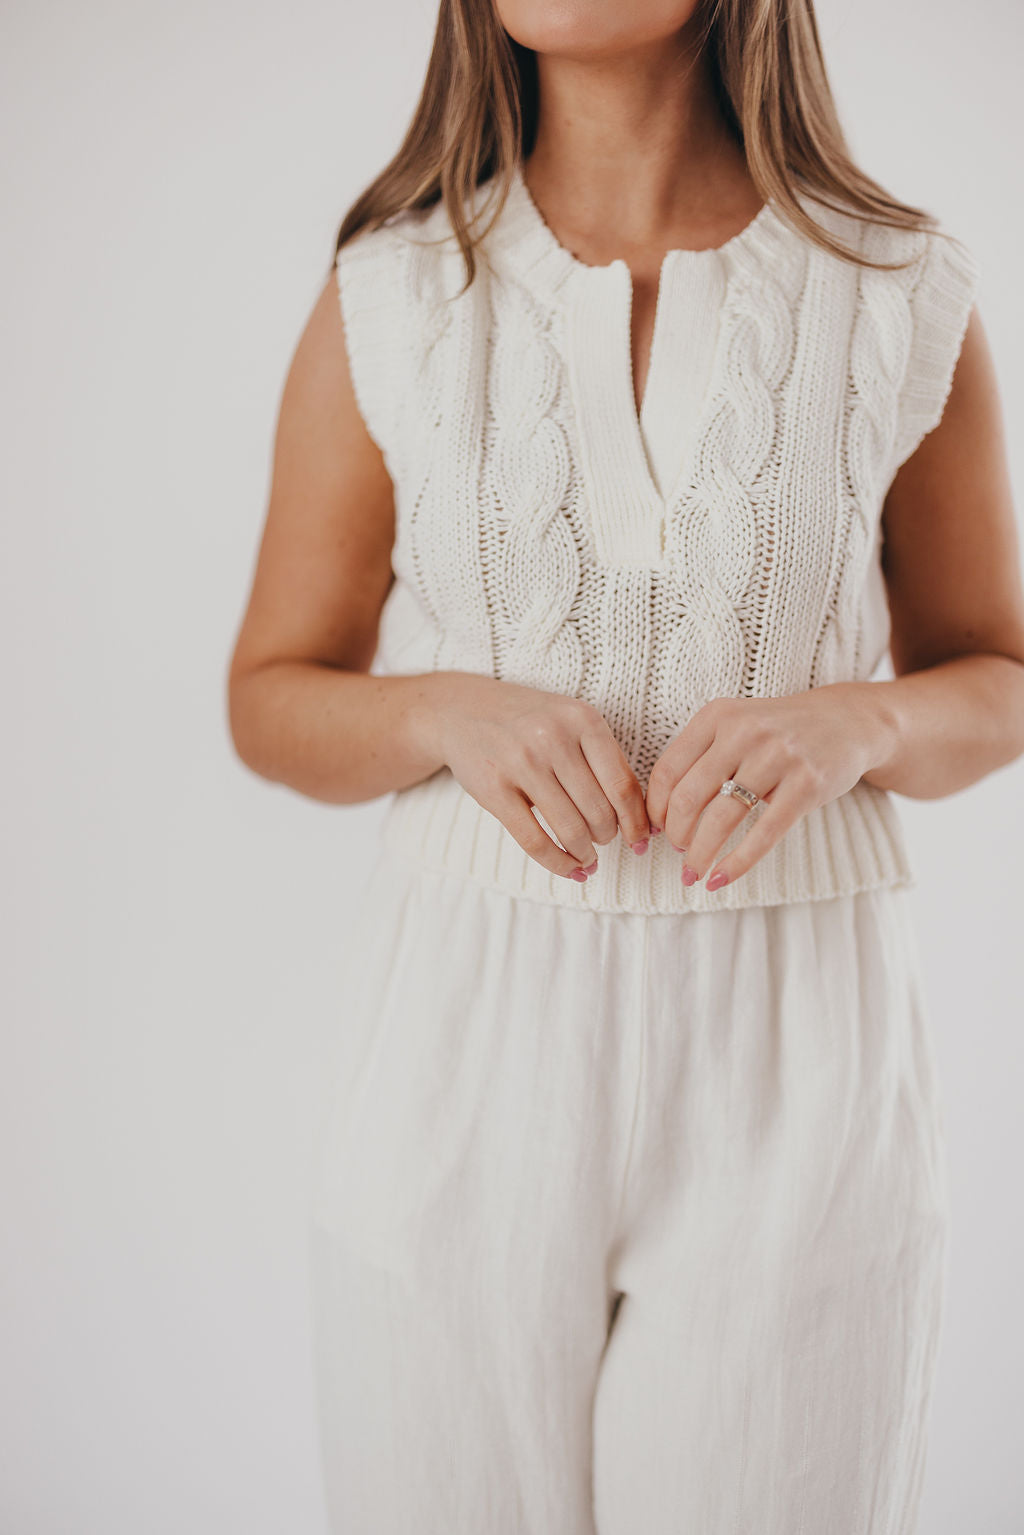 Monroe Sweater Knit Tank in White